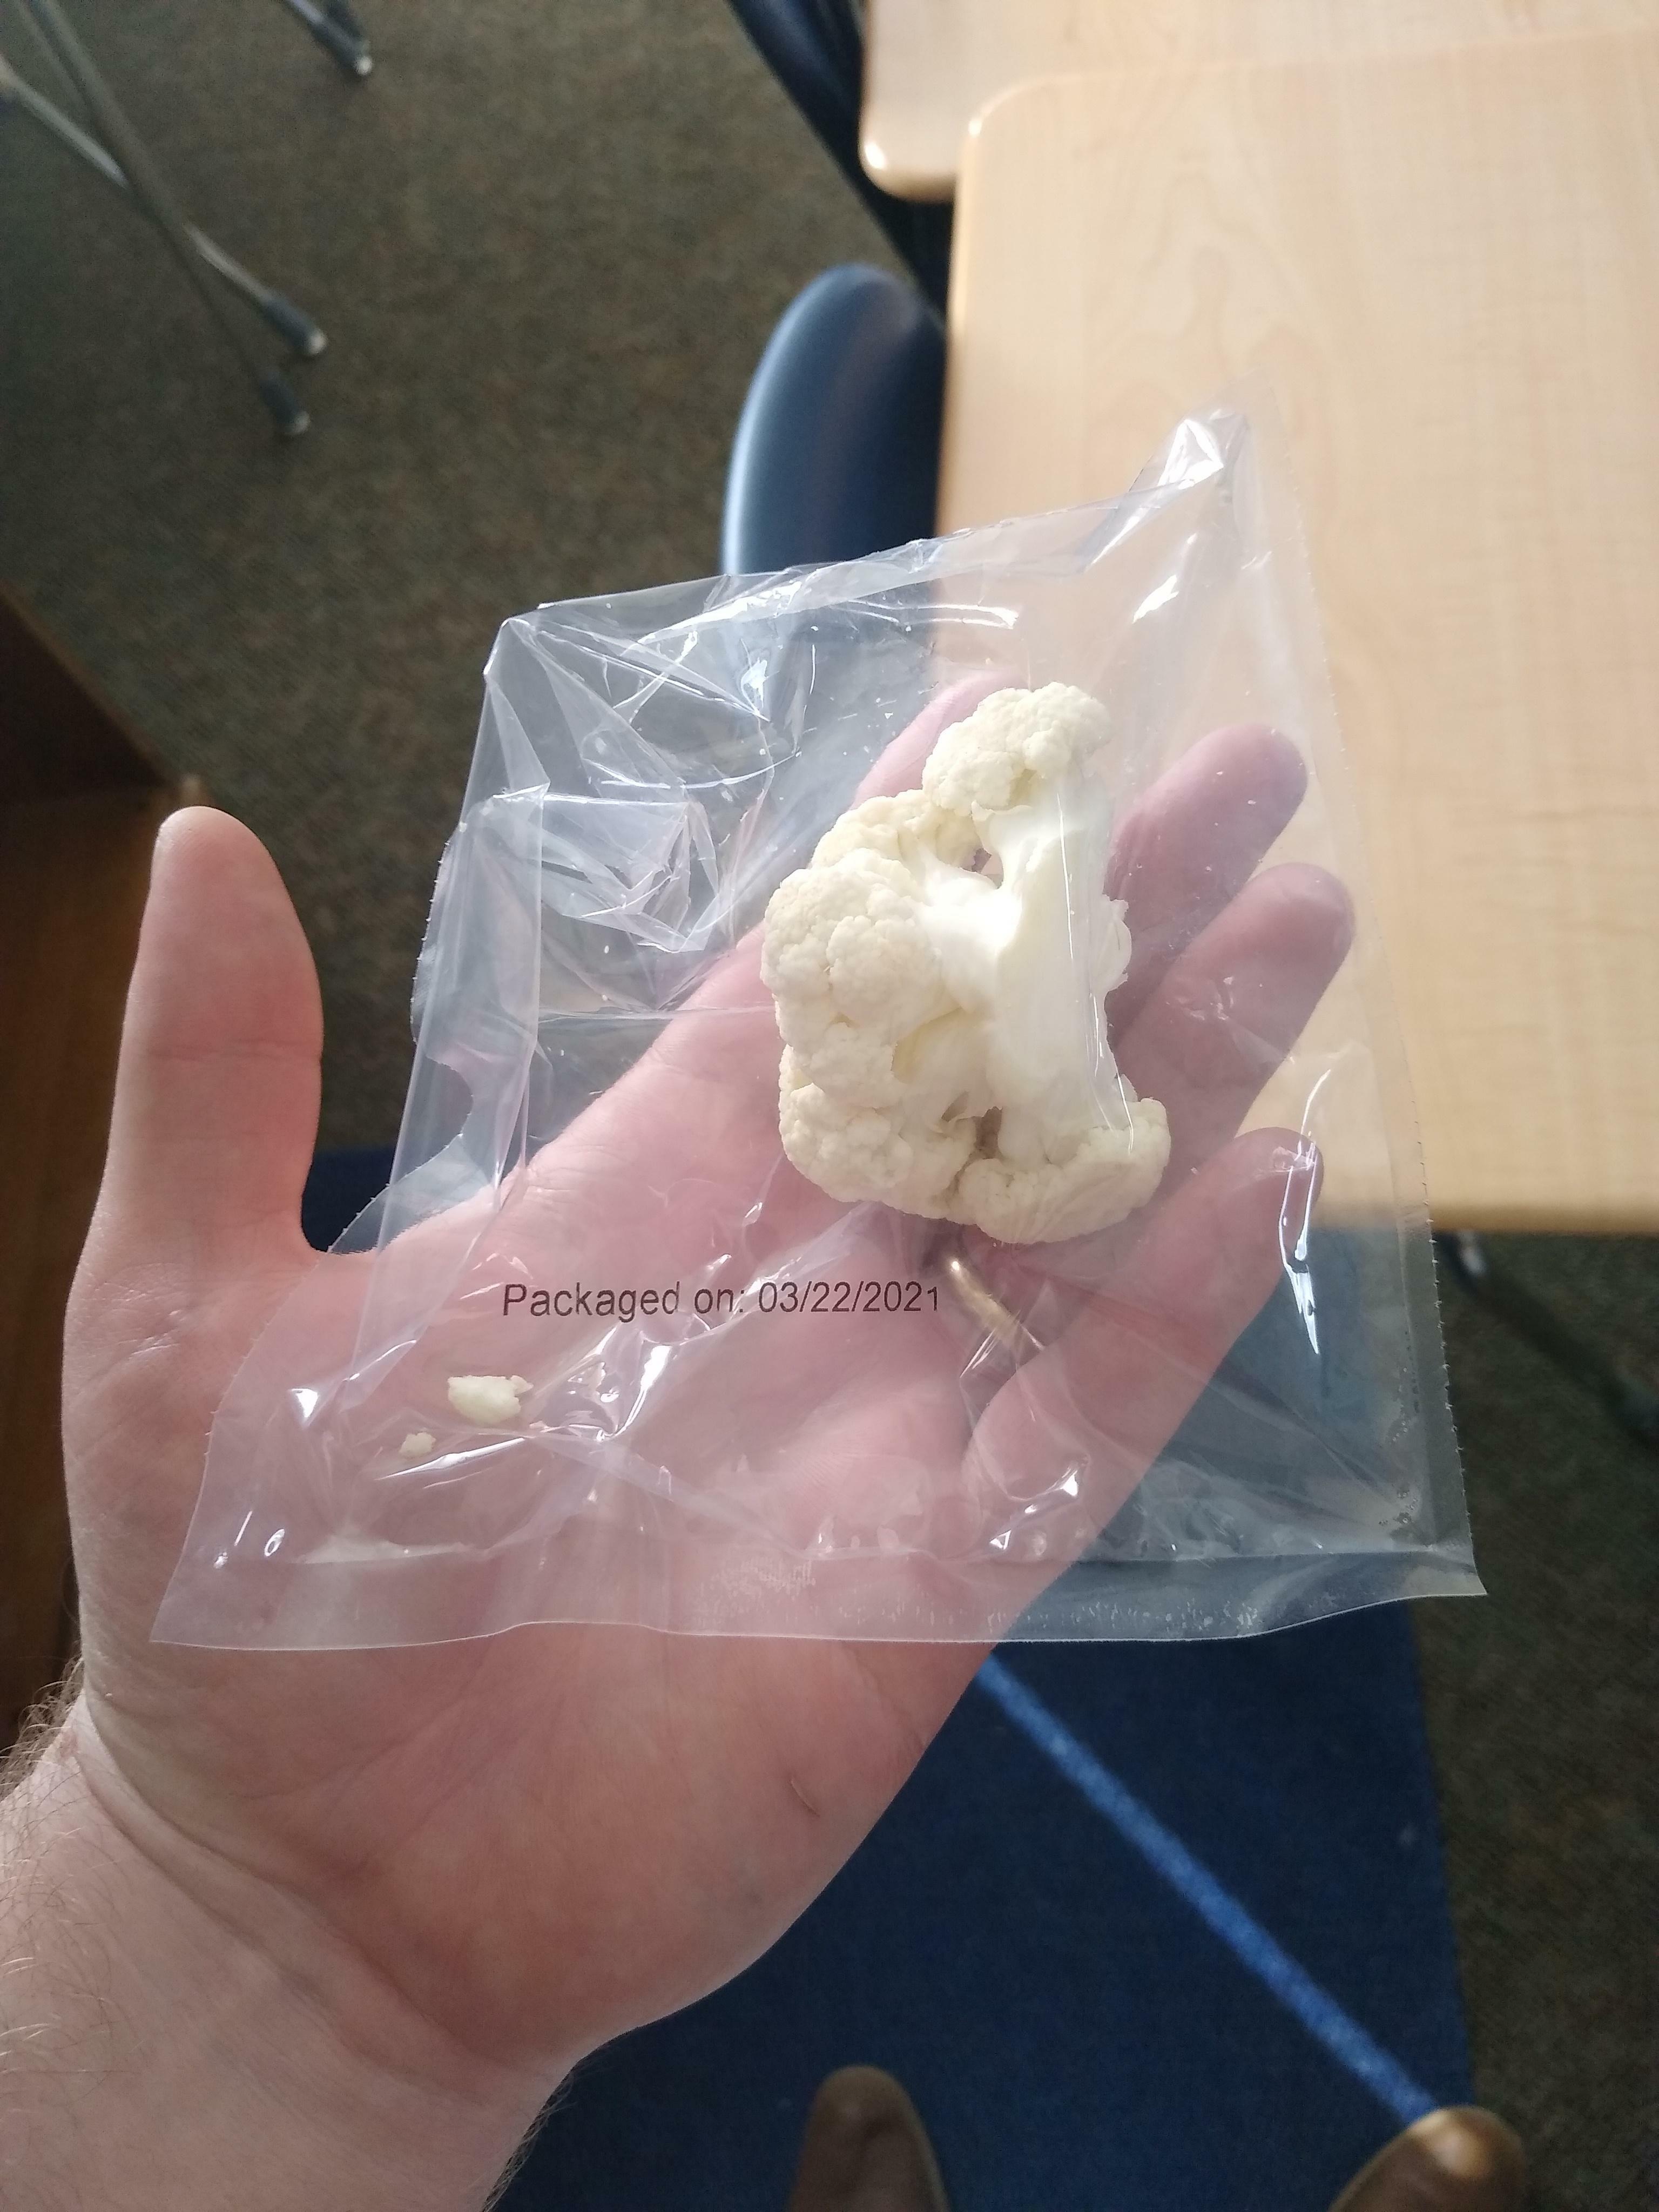 un seul chou-fleur dans un emballage plastique à usage unique provenant d'un repas scolaire.